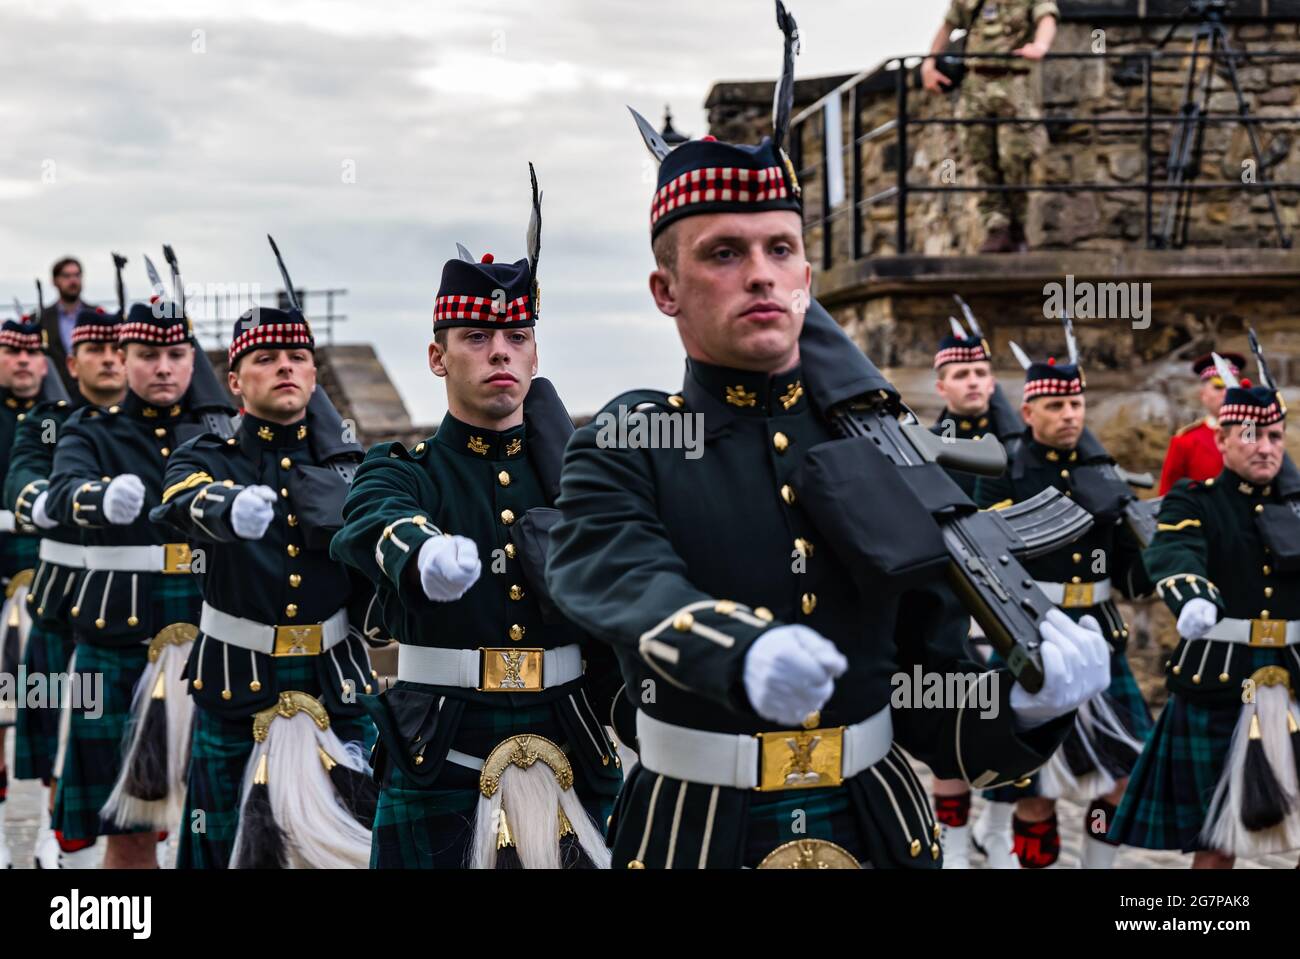 Schottische Regimentssoldaten mit Gewehren marschieren bei einer Militärzeremonie im Edinburgh Castle, Edinburgh, Schottland, Großbritannien Stockfoto